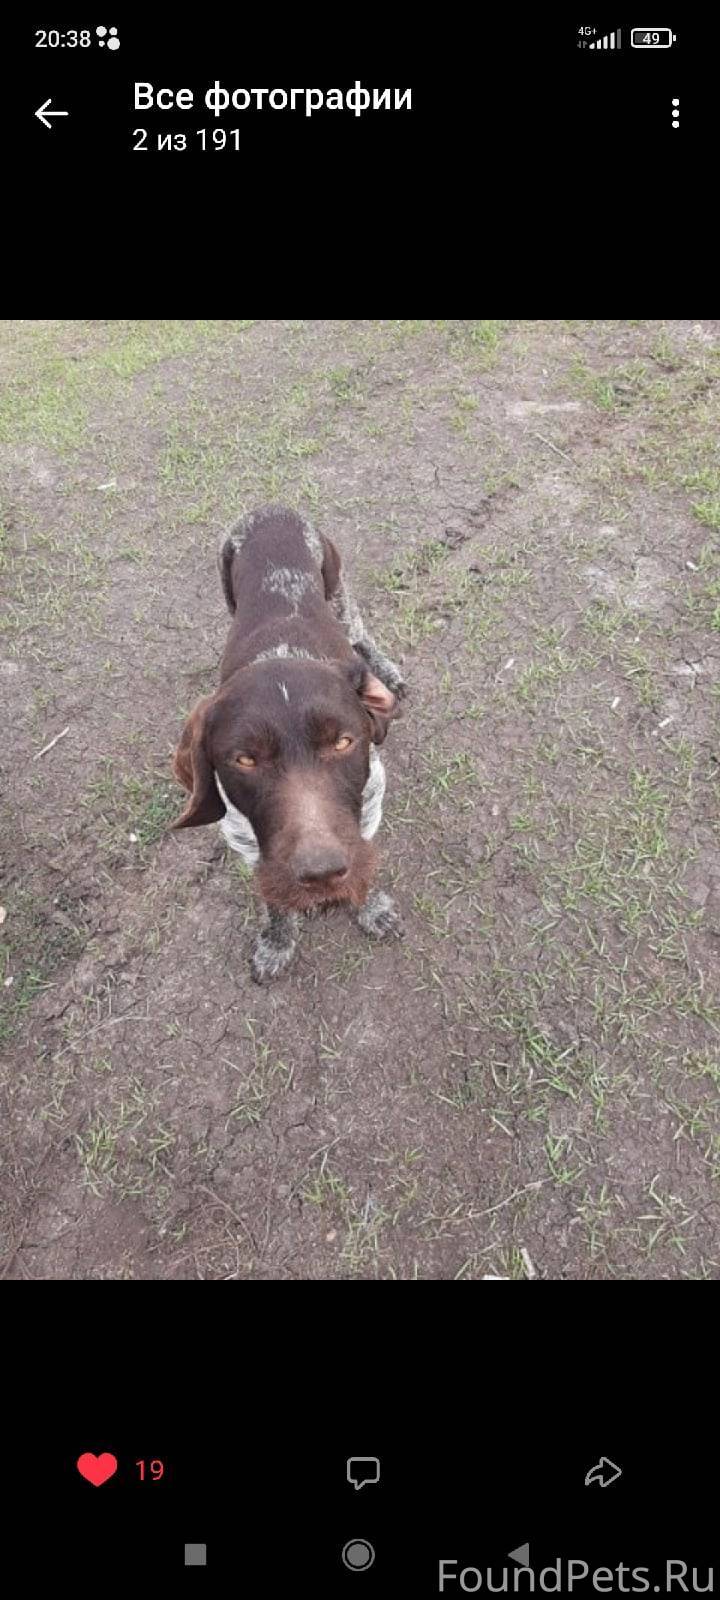 Найден пёс в грязнуха худой ус...